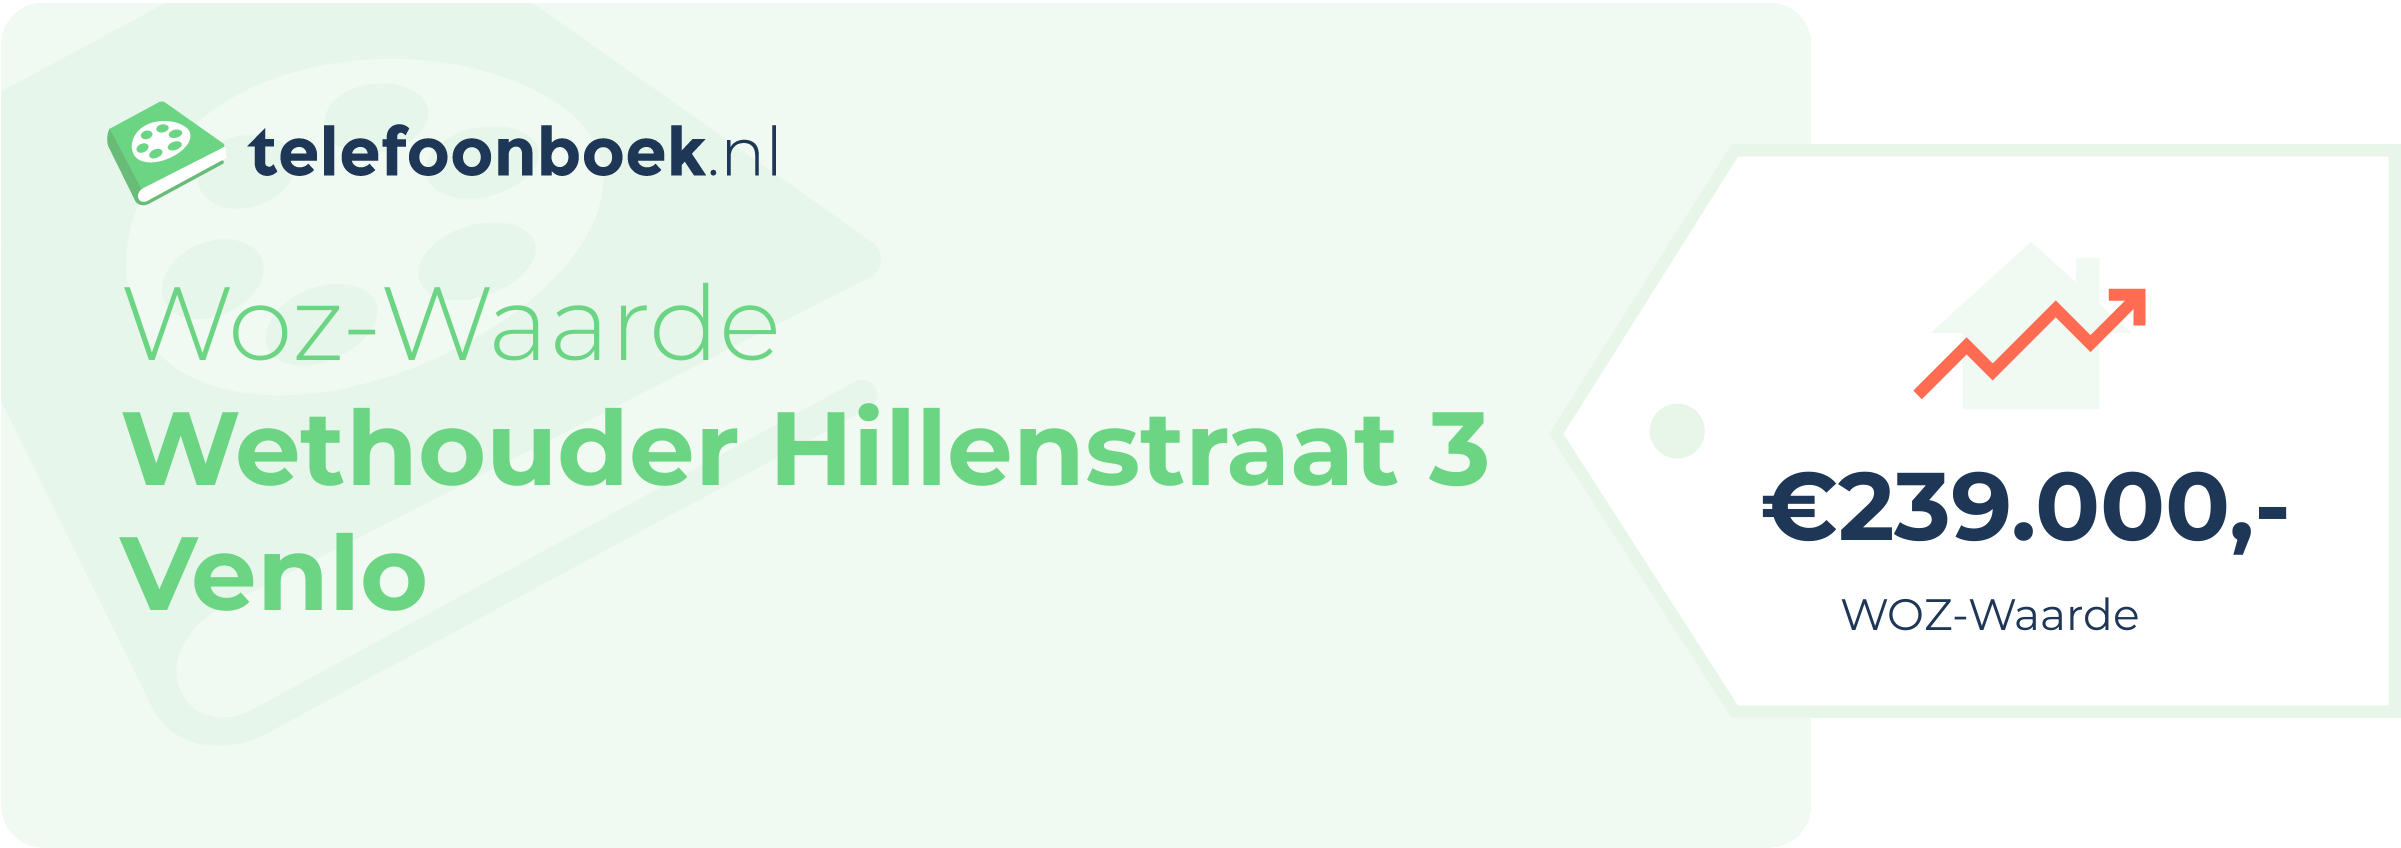 WOZ-waarde Wethouder Hillenstraat 3 Venlo